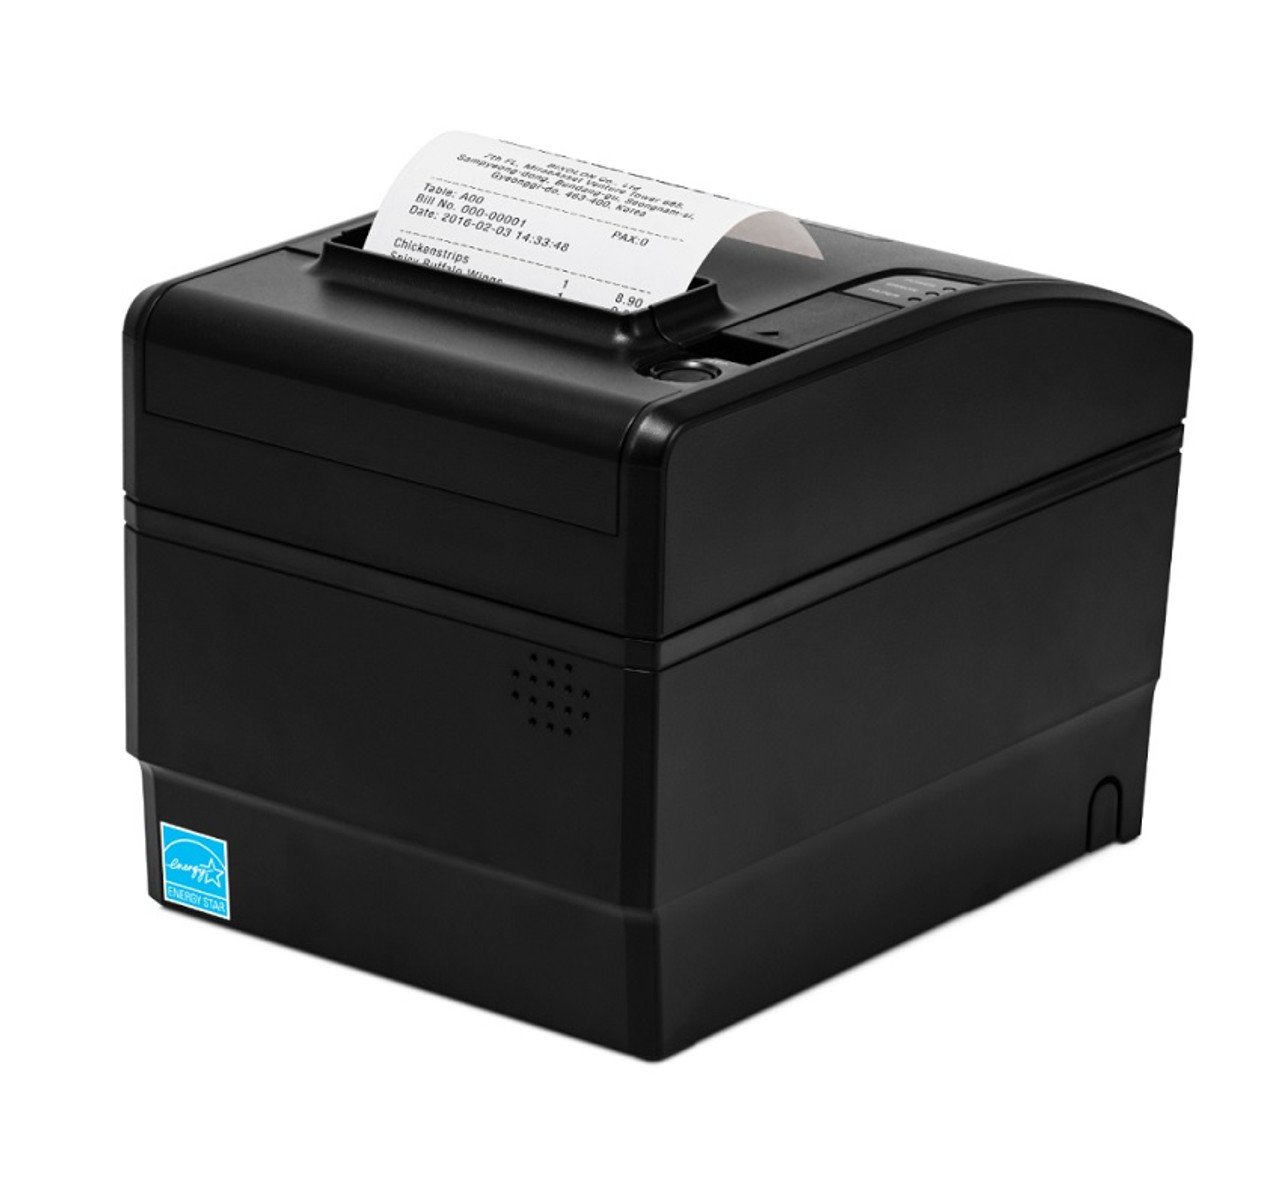 Bixolon SRP-S300 Receipt Printer